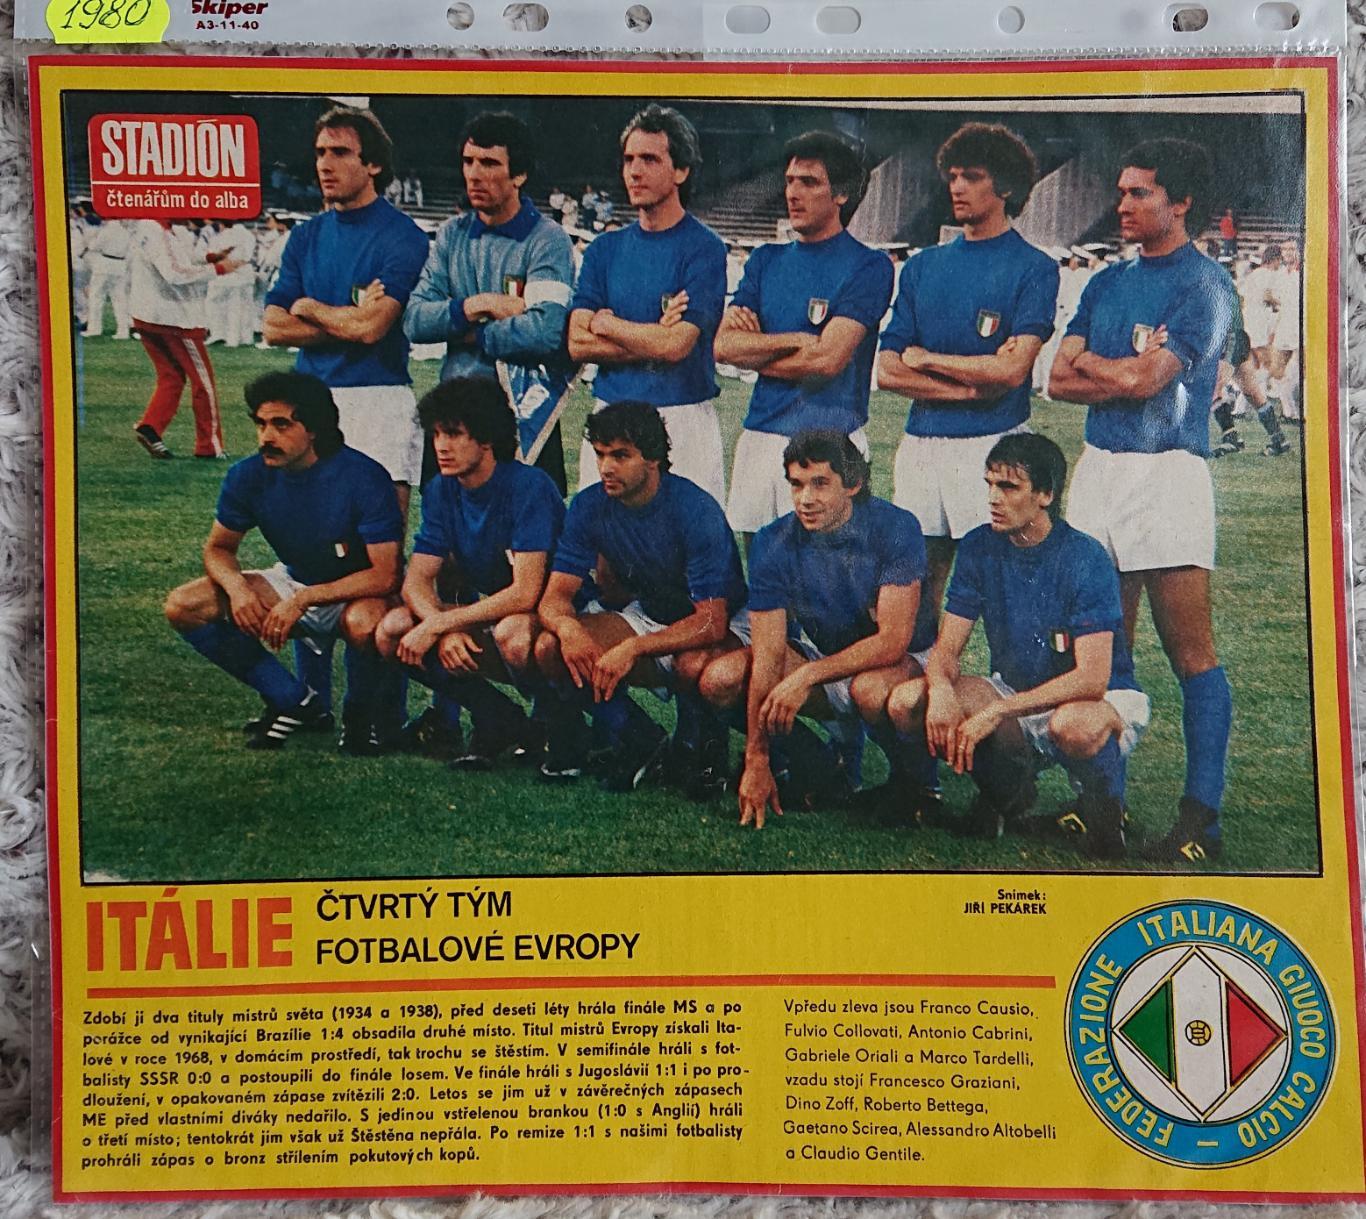 Футбол. Постер з журналу Стадіон. /Stadion Італія